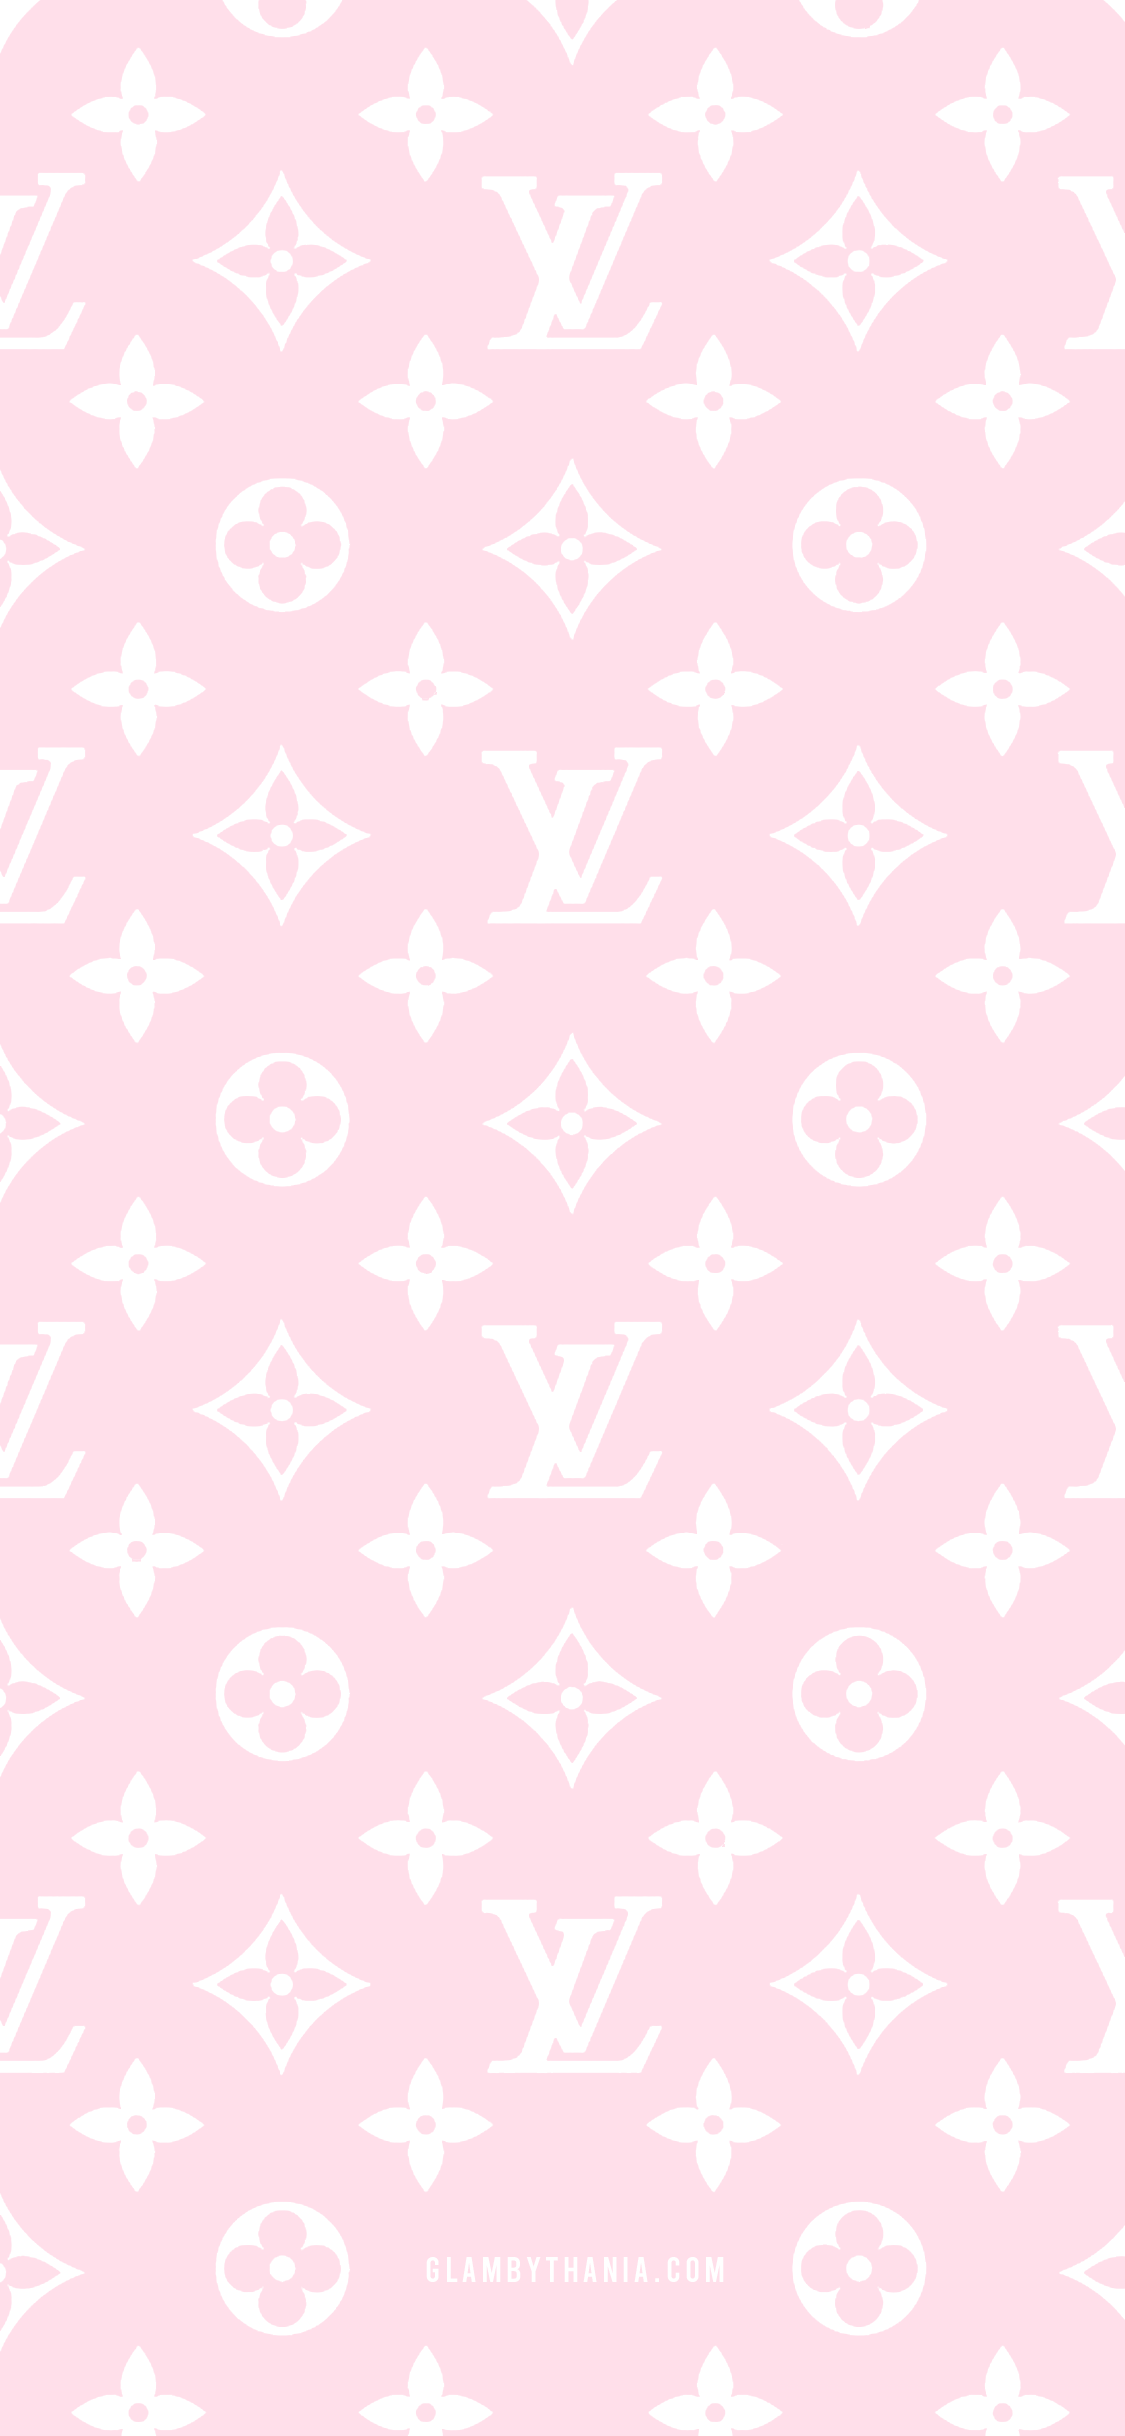 FREE Designer Girly Pink iPhone Wallpaper